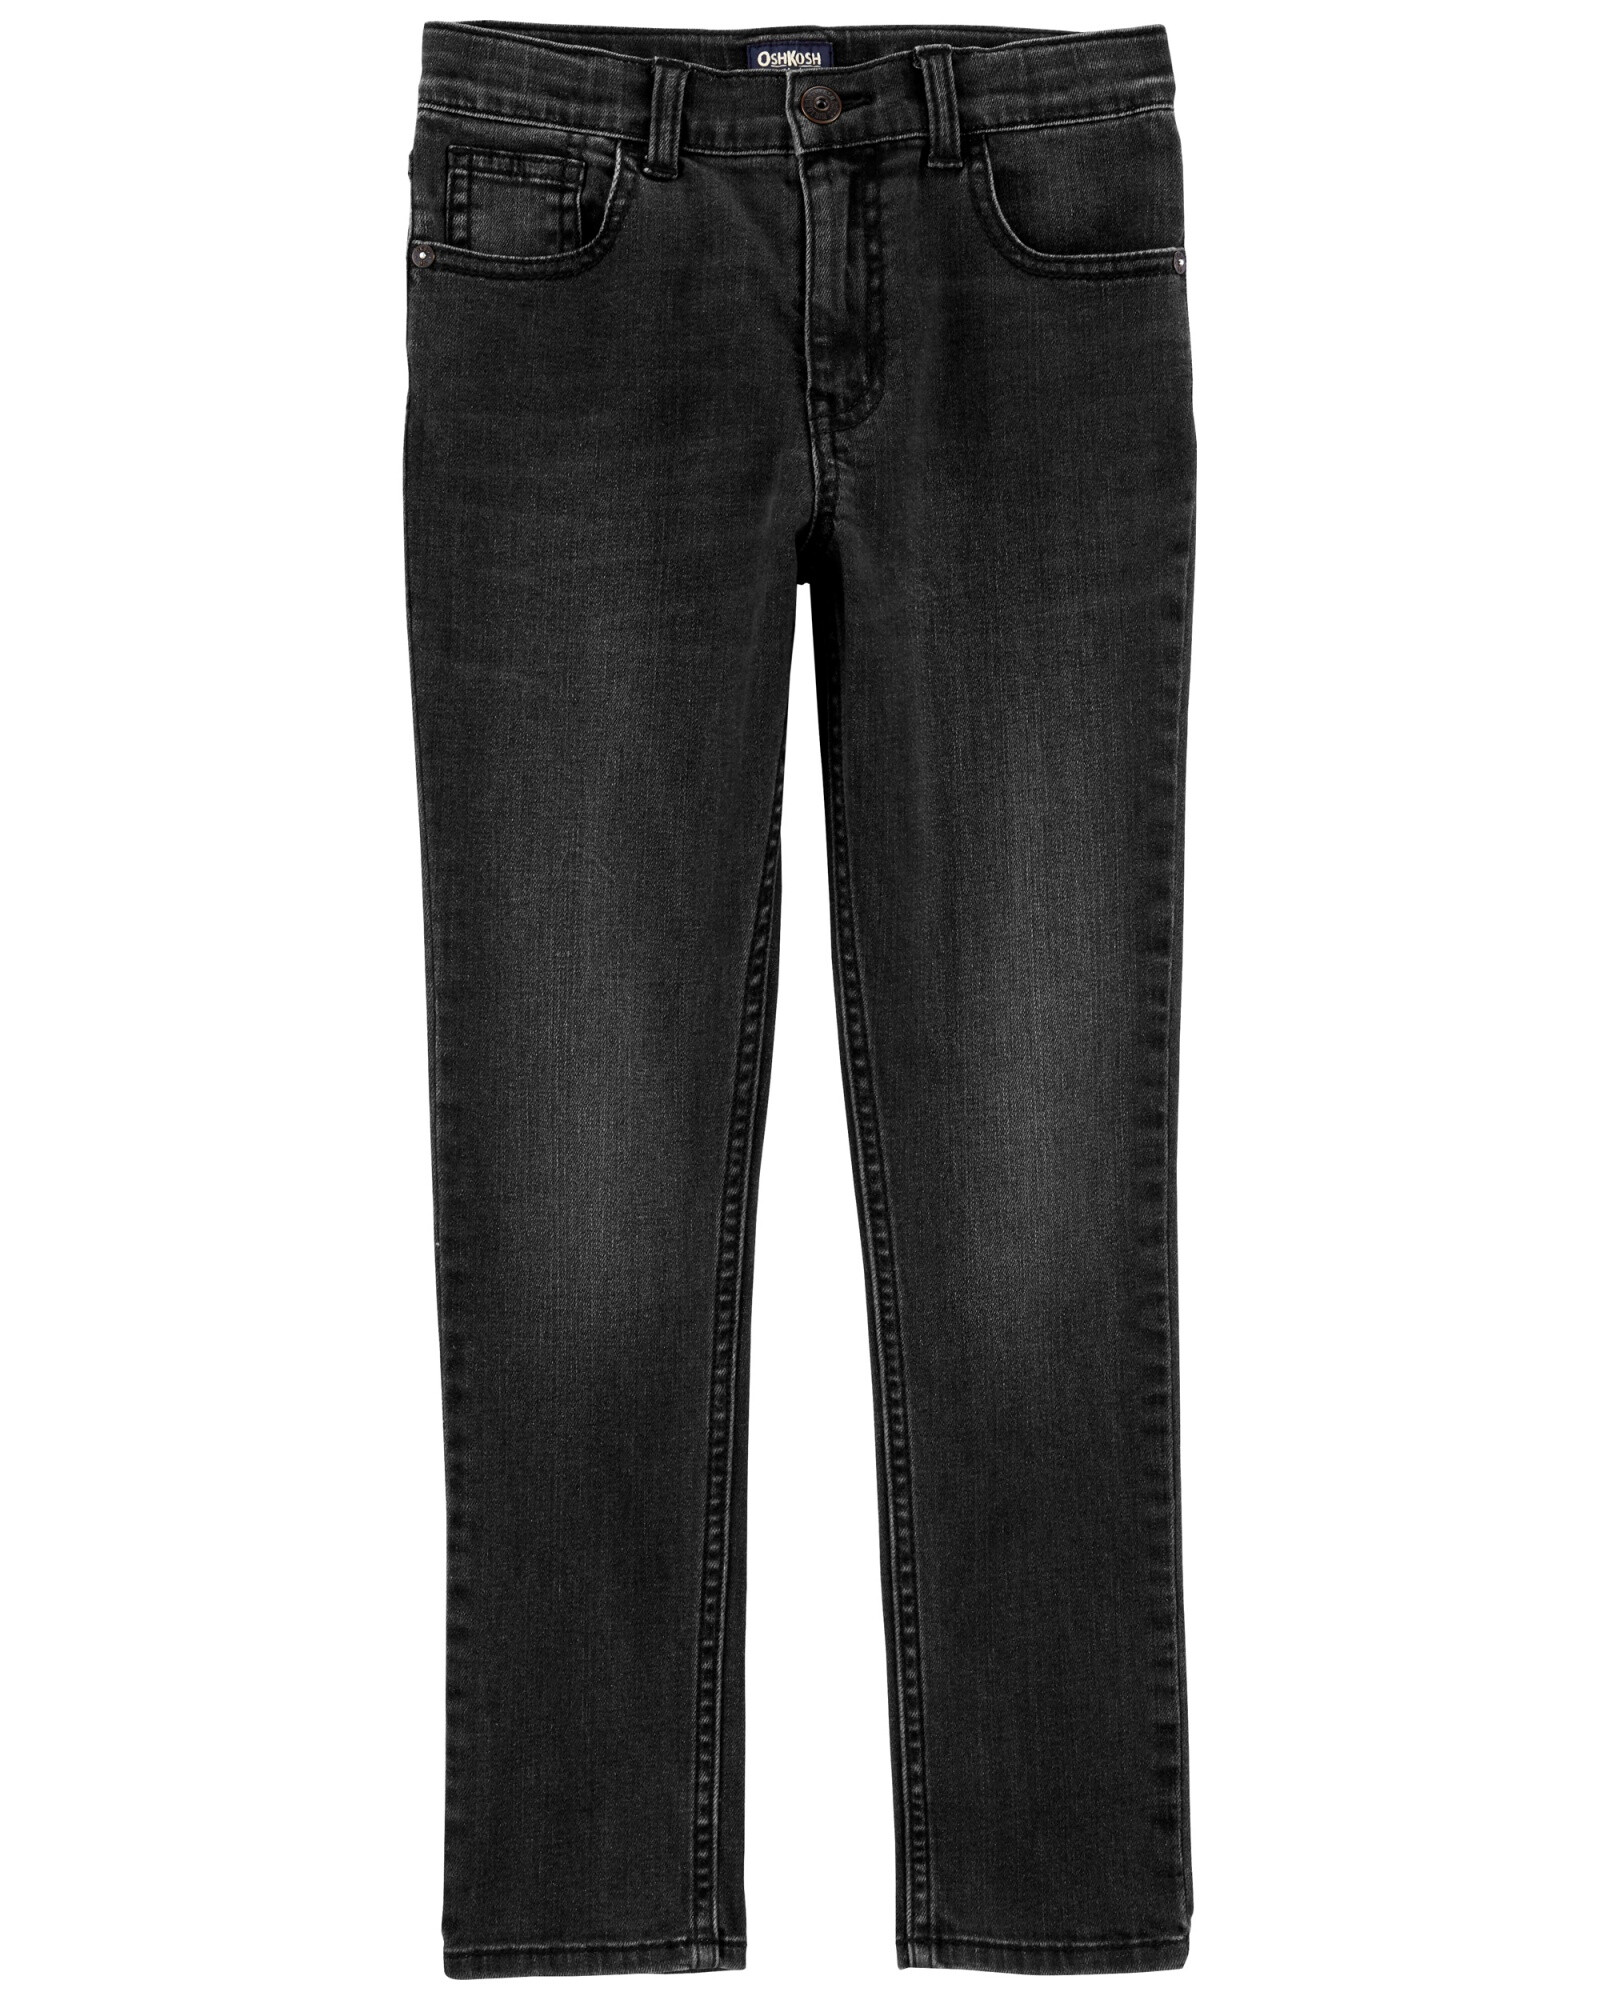 Pantalón de jean clásico, negro 0